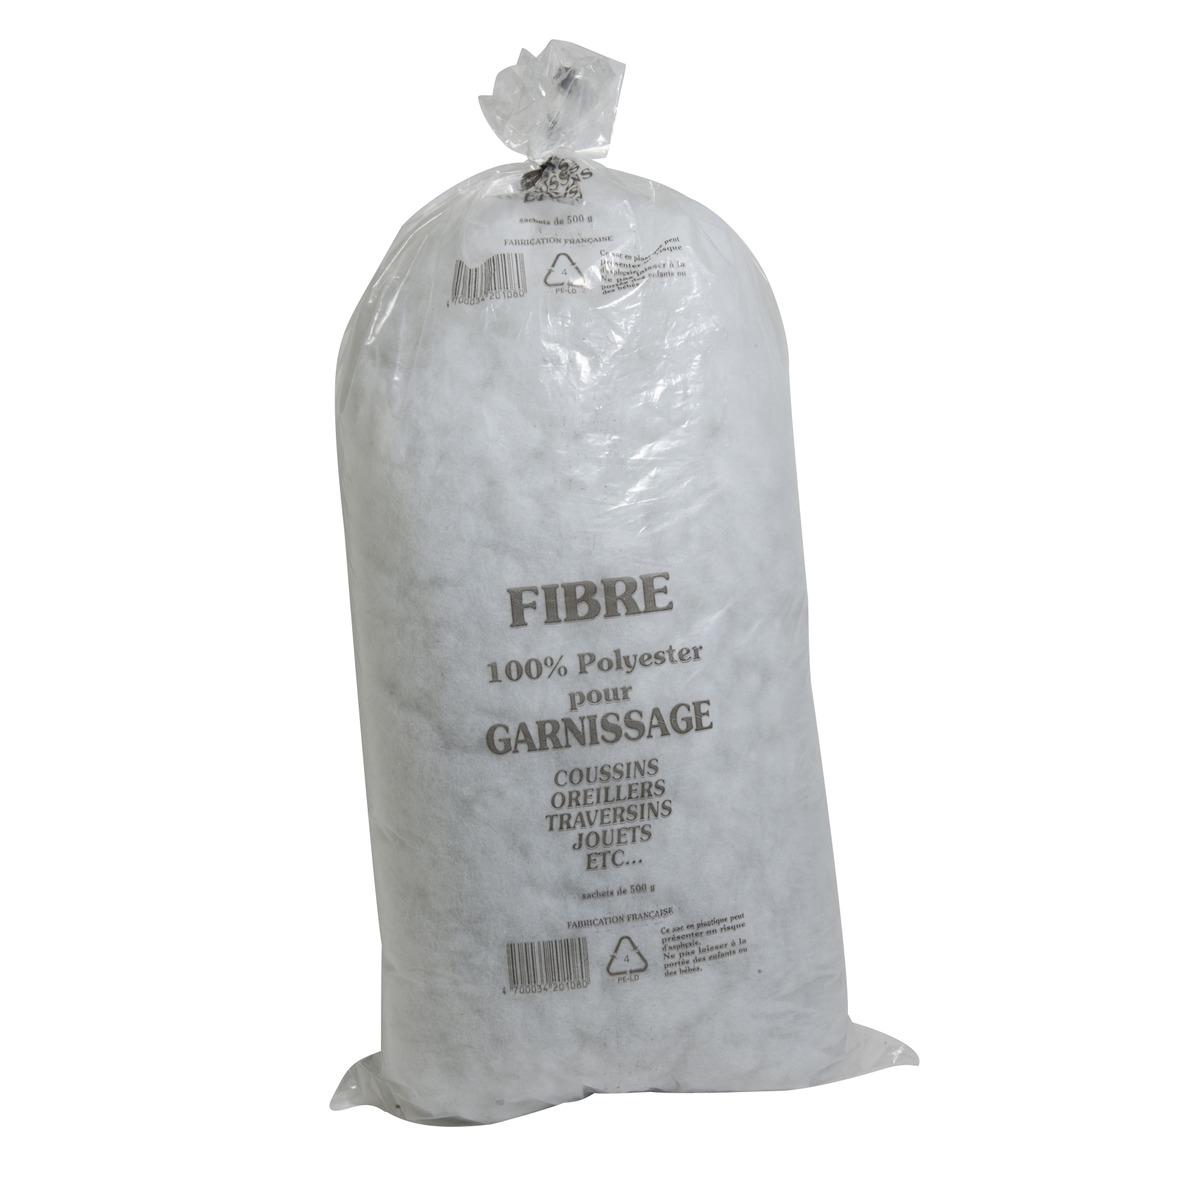 Le sac de fibres siliconées - Pour garnissage - 500 grammes - 100% polyester - Blanc